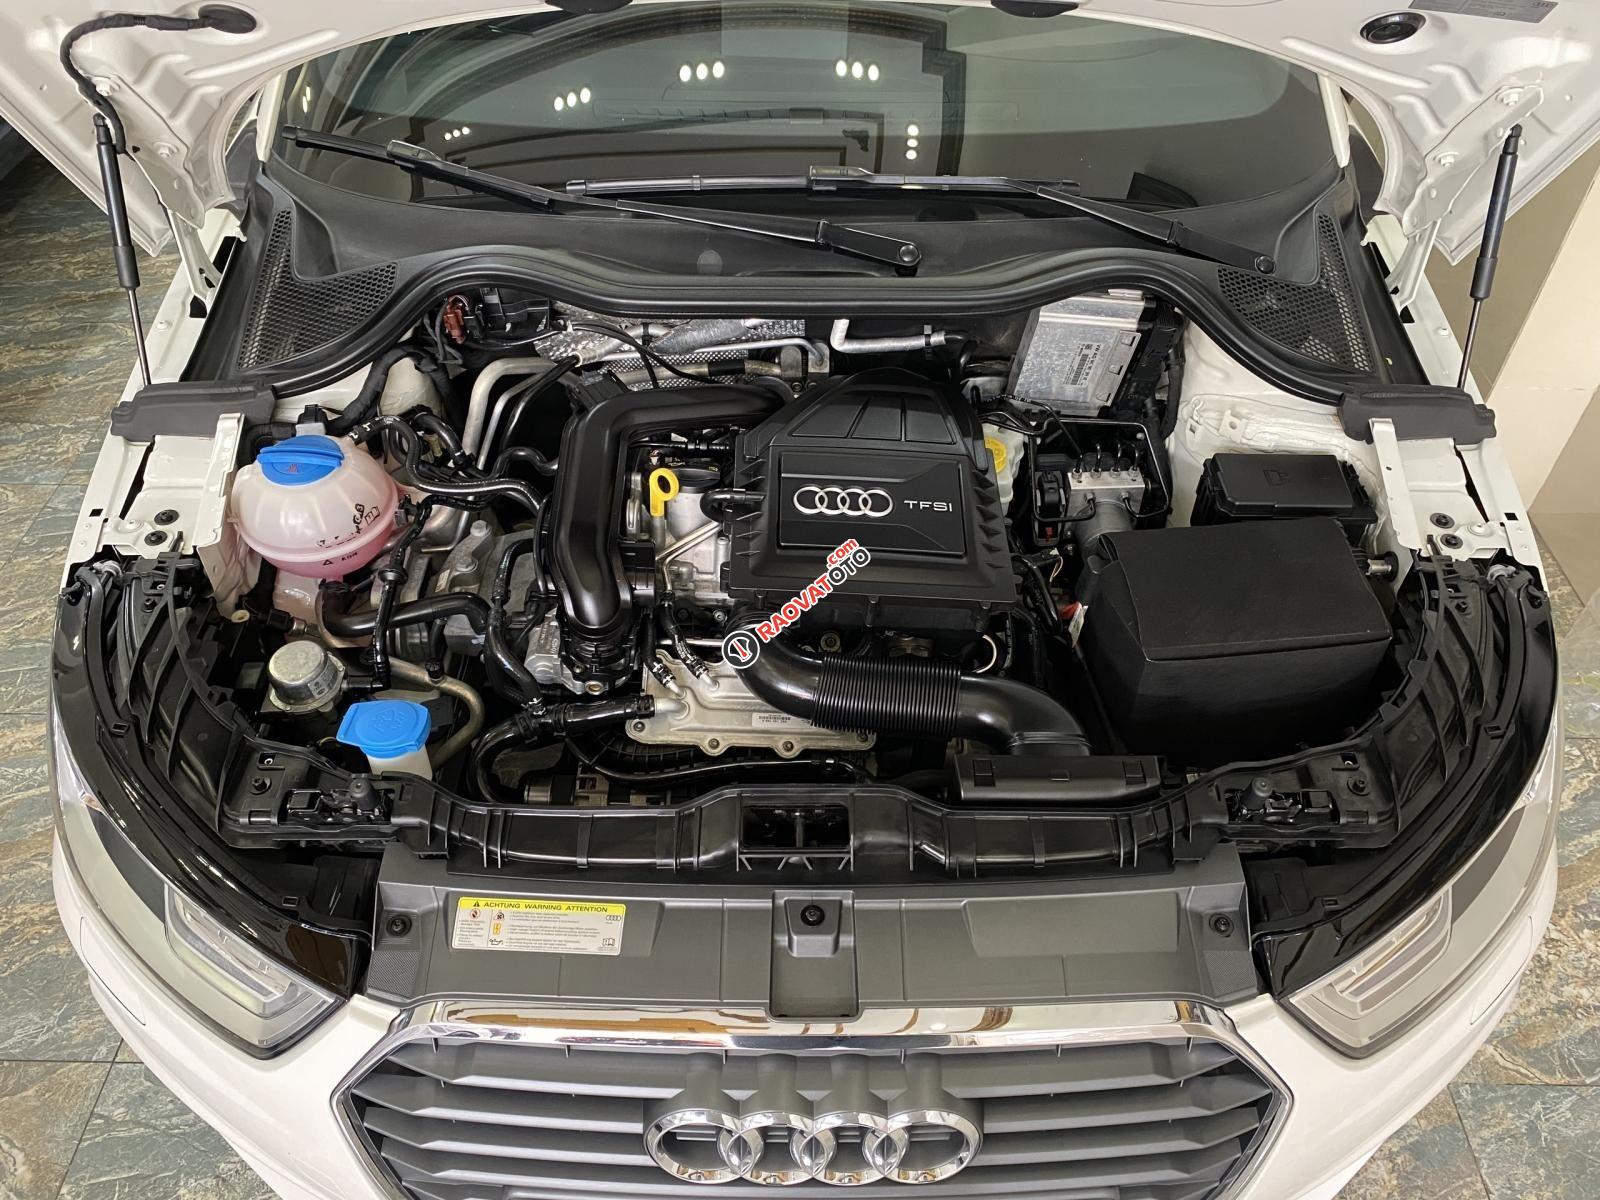 Bán xe Audi A1 bản Sline năm 2015, siêu lướt 21.000km nội thất đen zin nguyên bản, option miên man-0